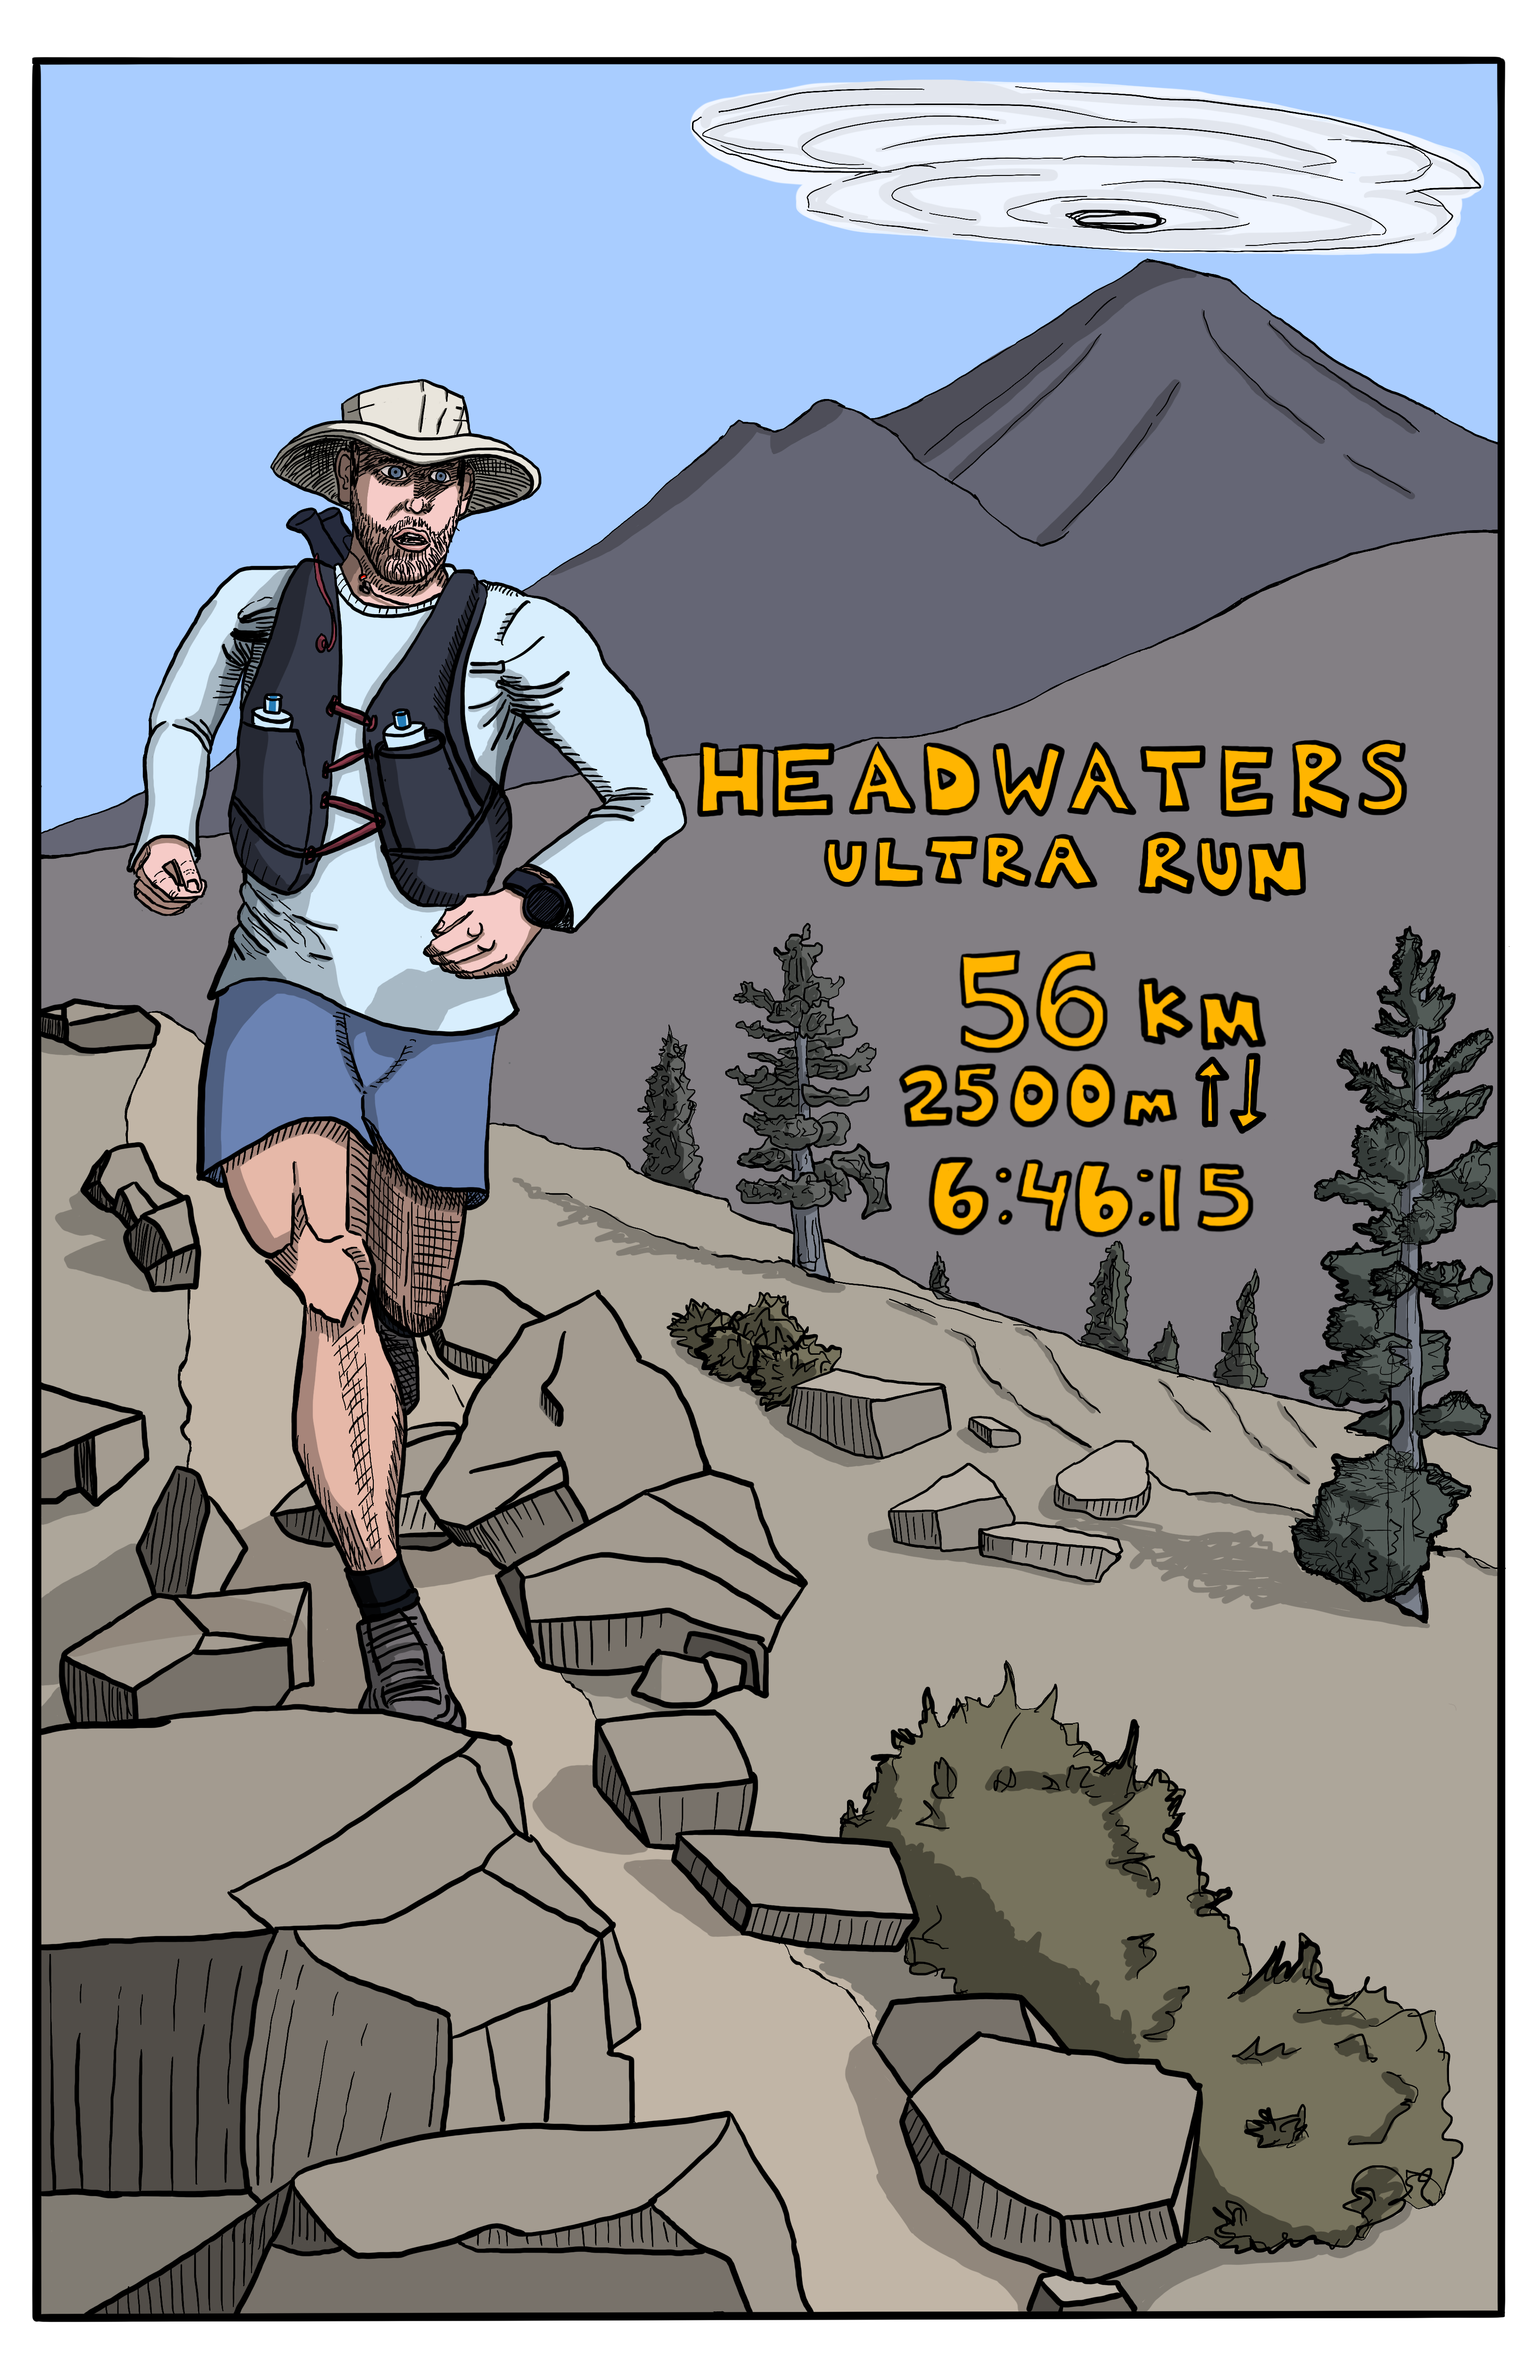 illustration of trail runner